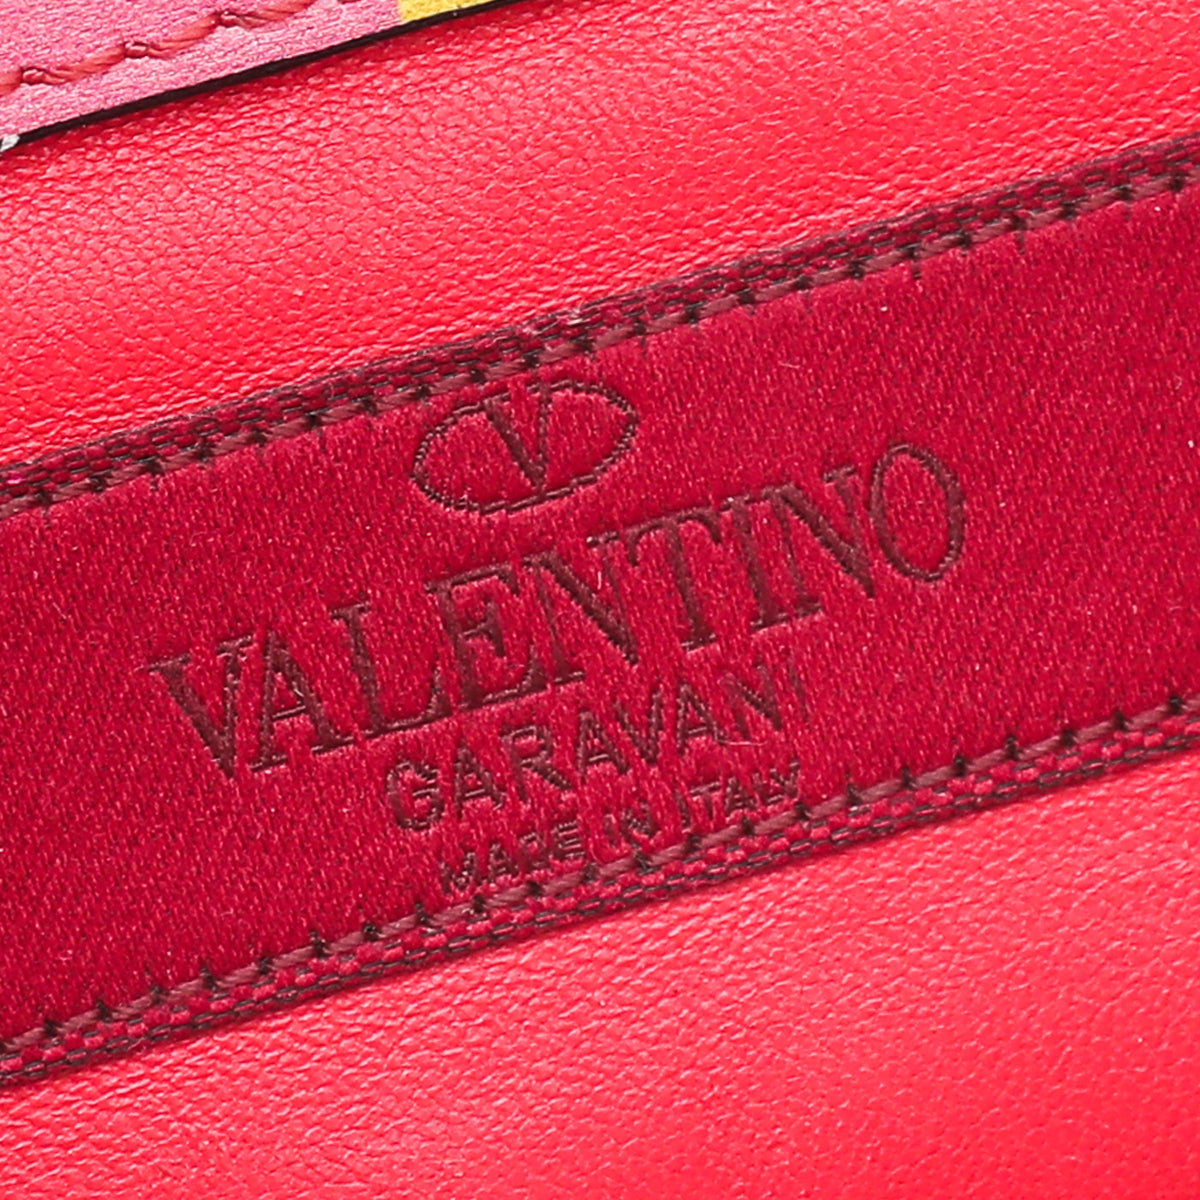 Valentino Multicolor Glam Lock Small Bag